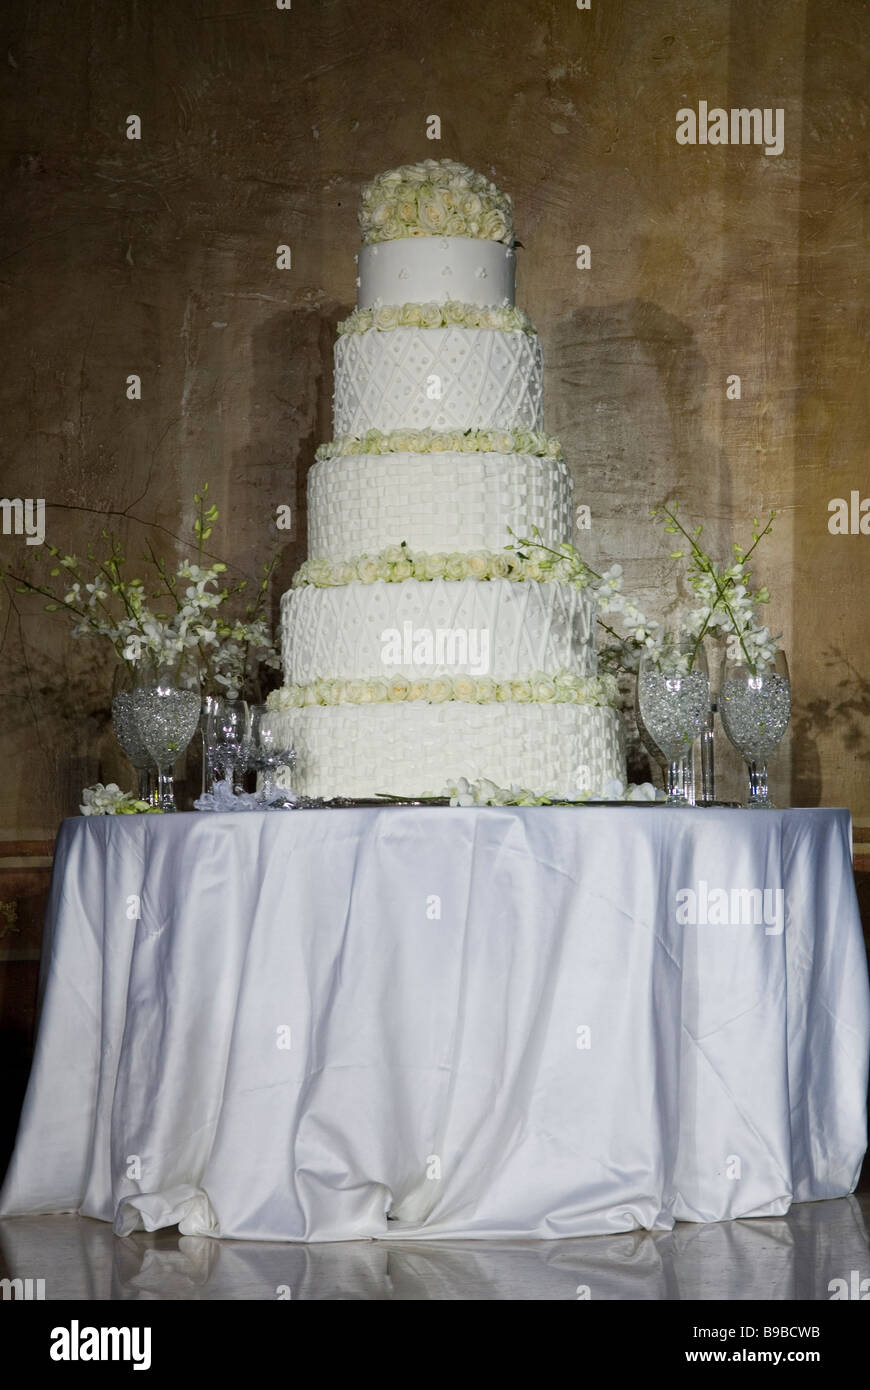 Abgestufte Hochzeitstorte auf Tisch Beirut Libanon Middle East Asia Stockfoto